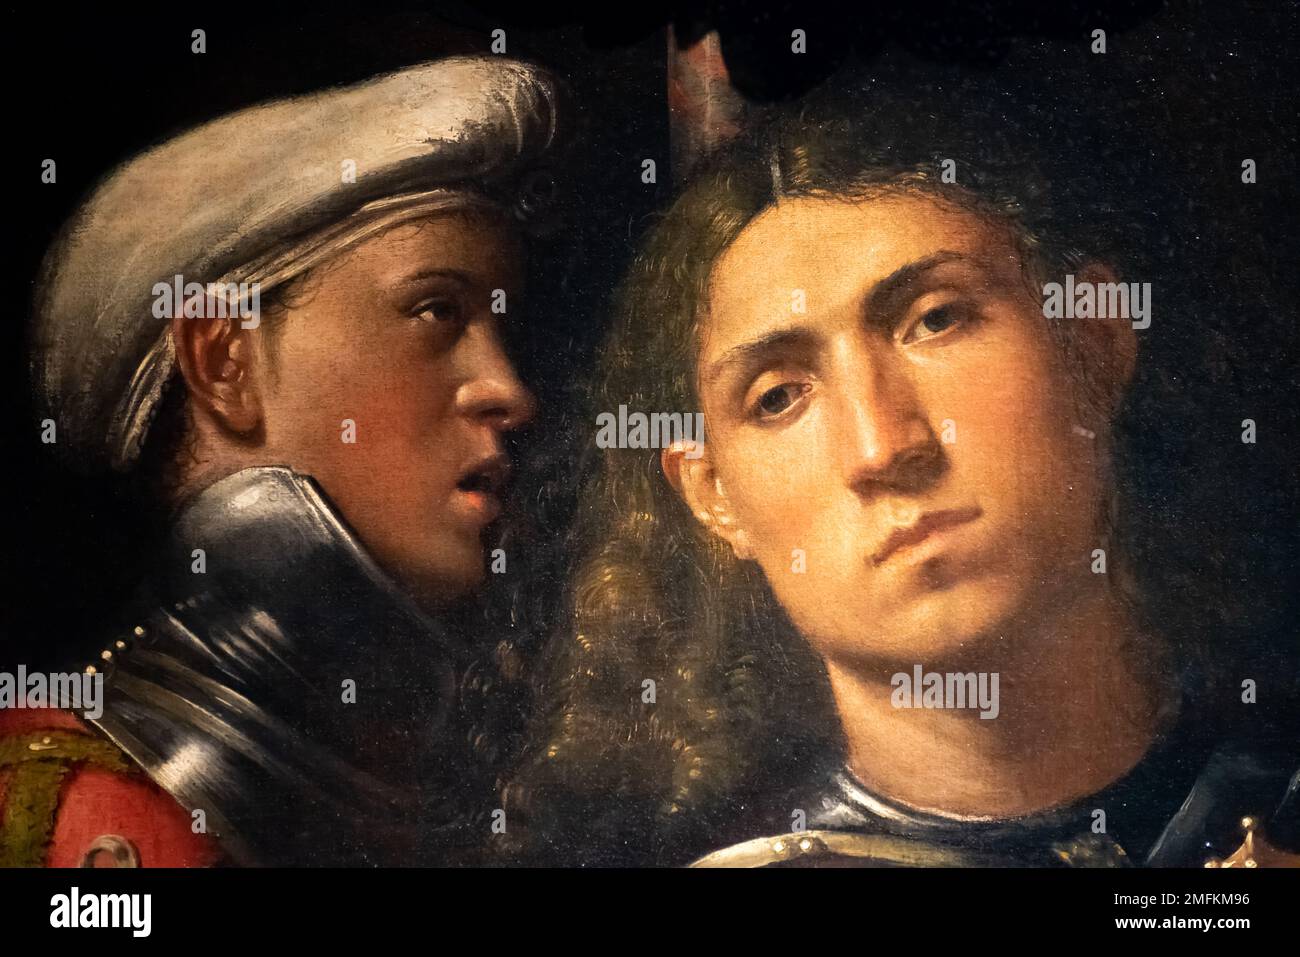 Détail de la peinture de la Renaissance qui représente deux jeunes soldats Banque D'Images